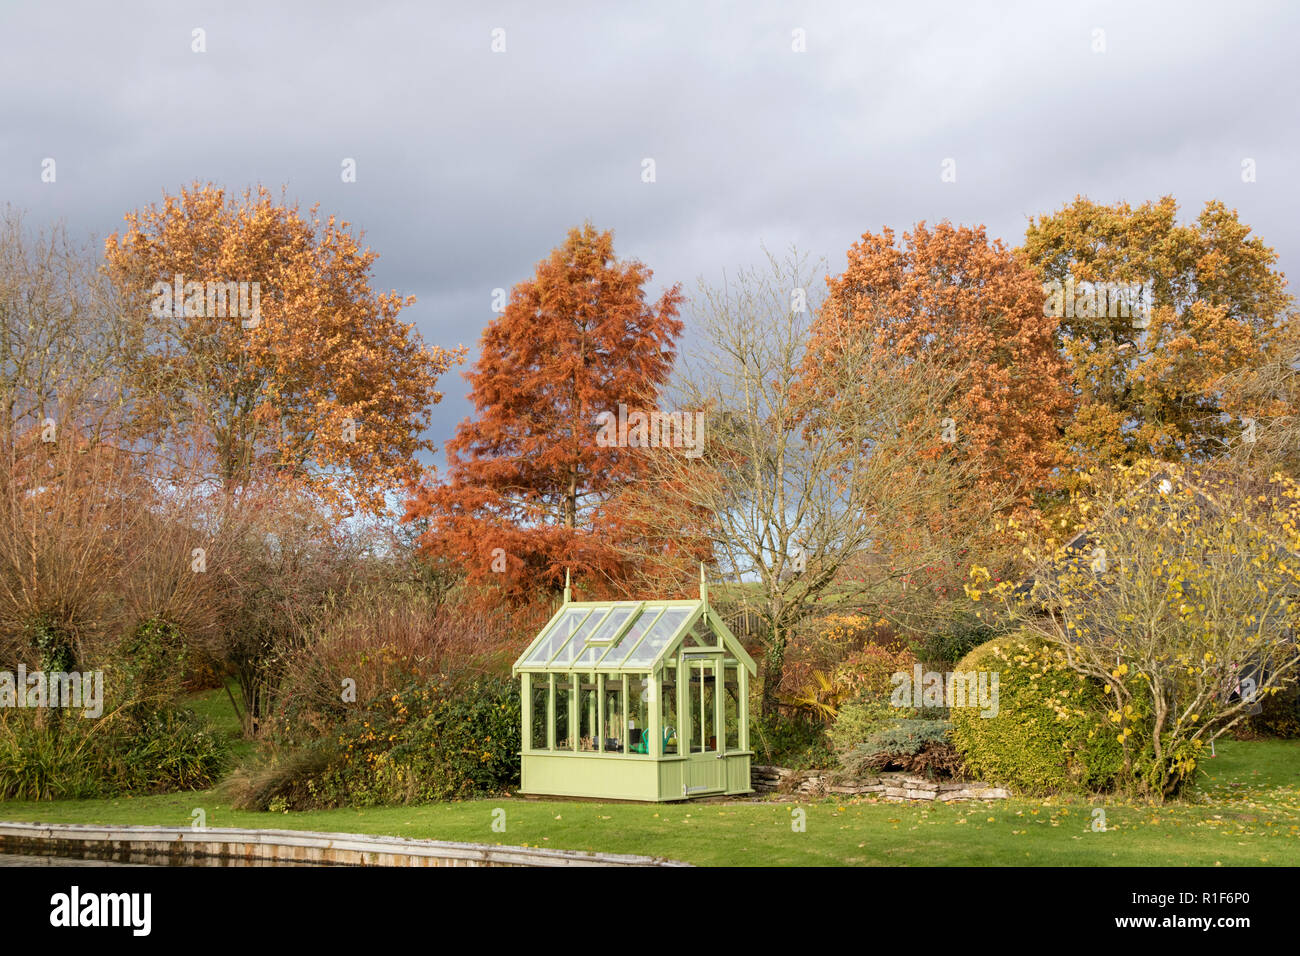 A green house in a autumn garden, England, UK Stock Photo